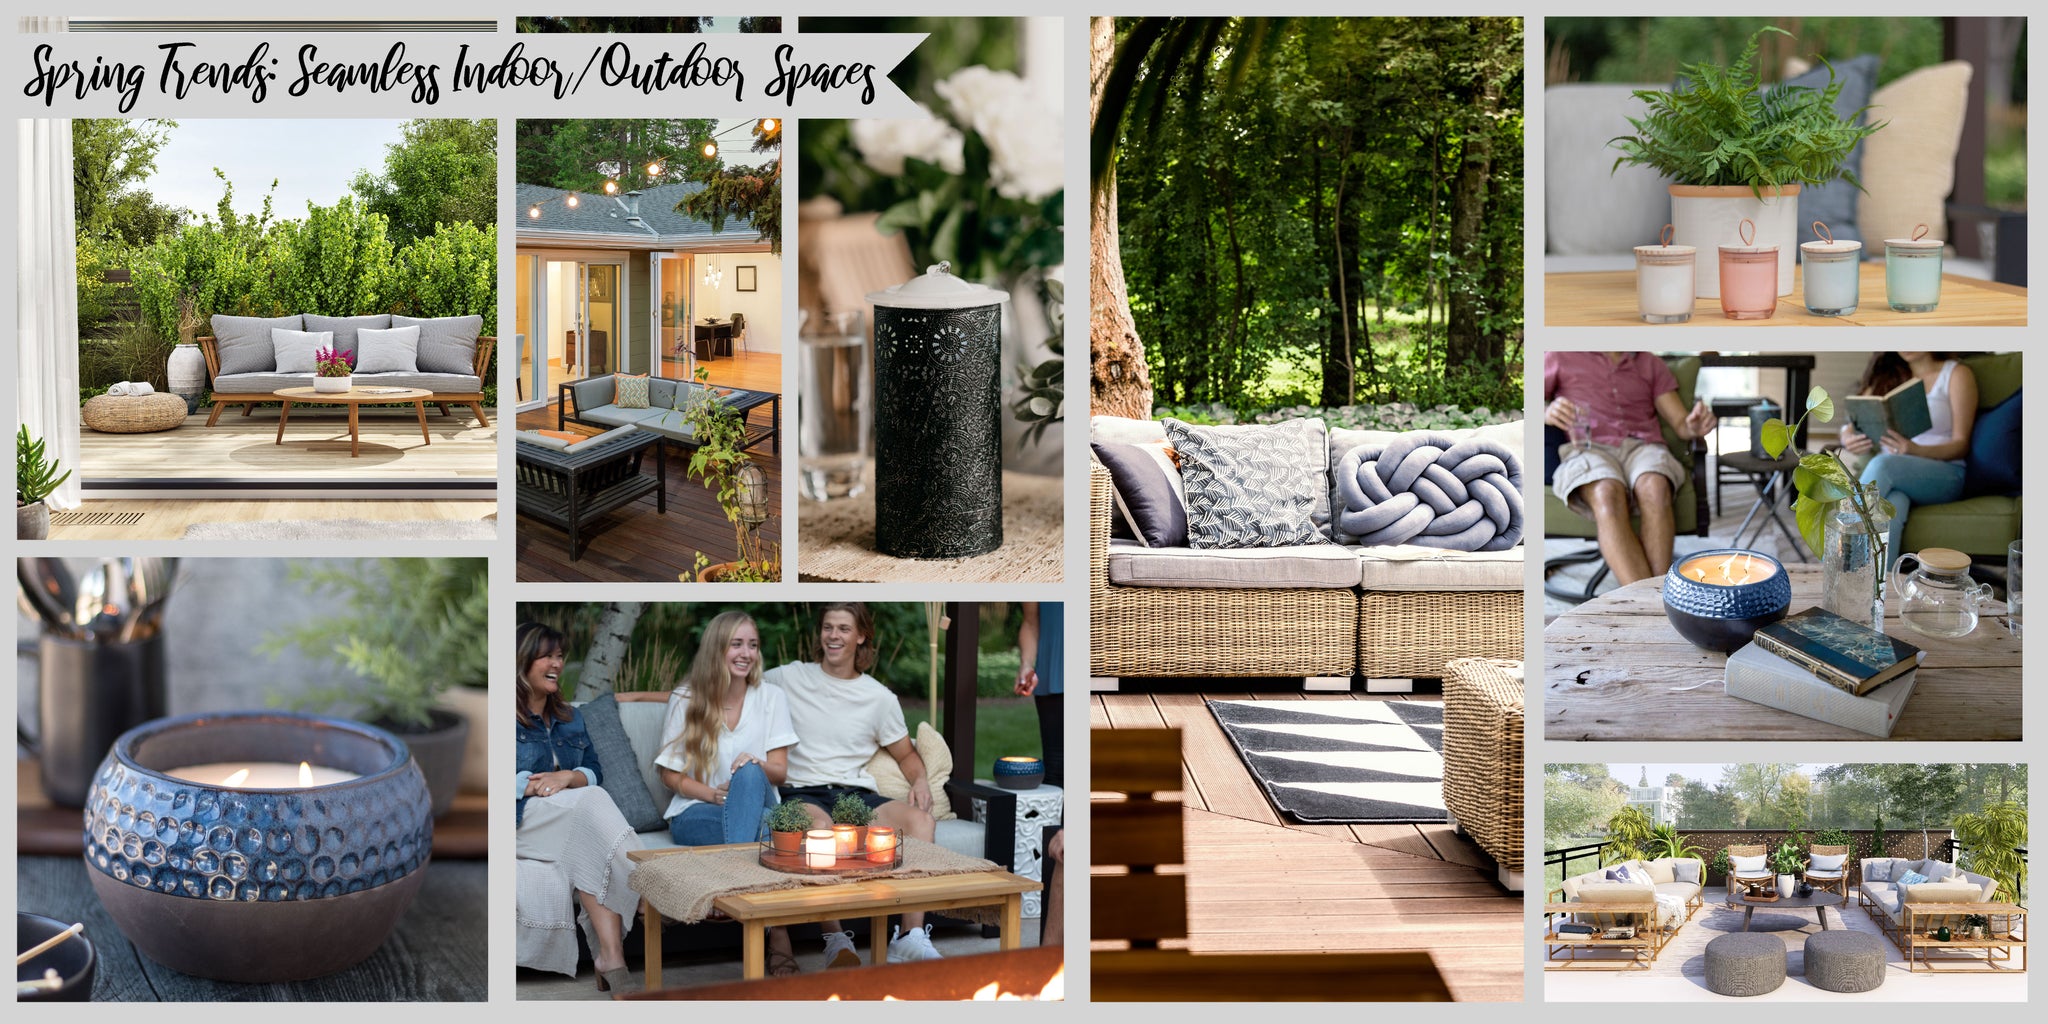 Spring 2021 Outdoor Living Trends: Seamless Indoor/Outdoor Spaces | Patio Essentials